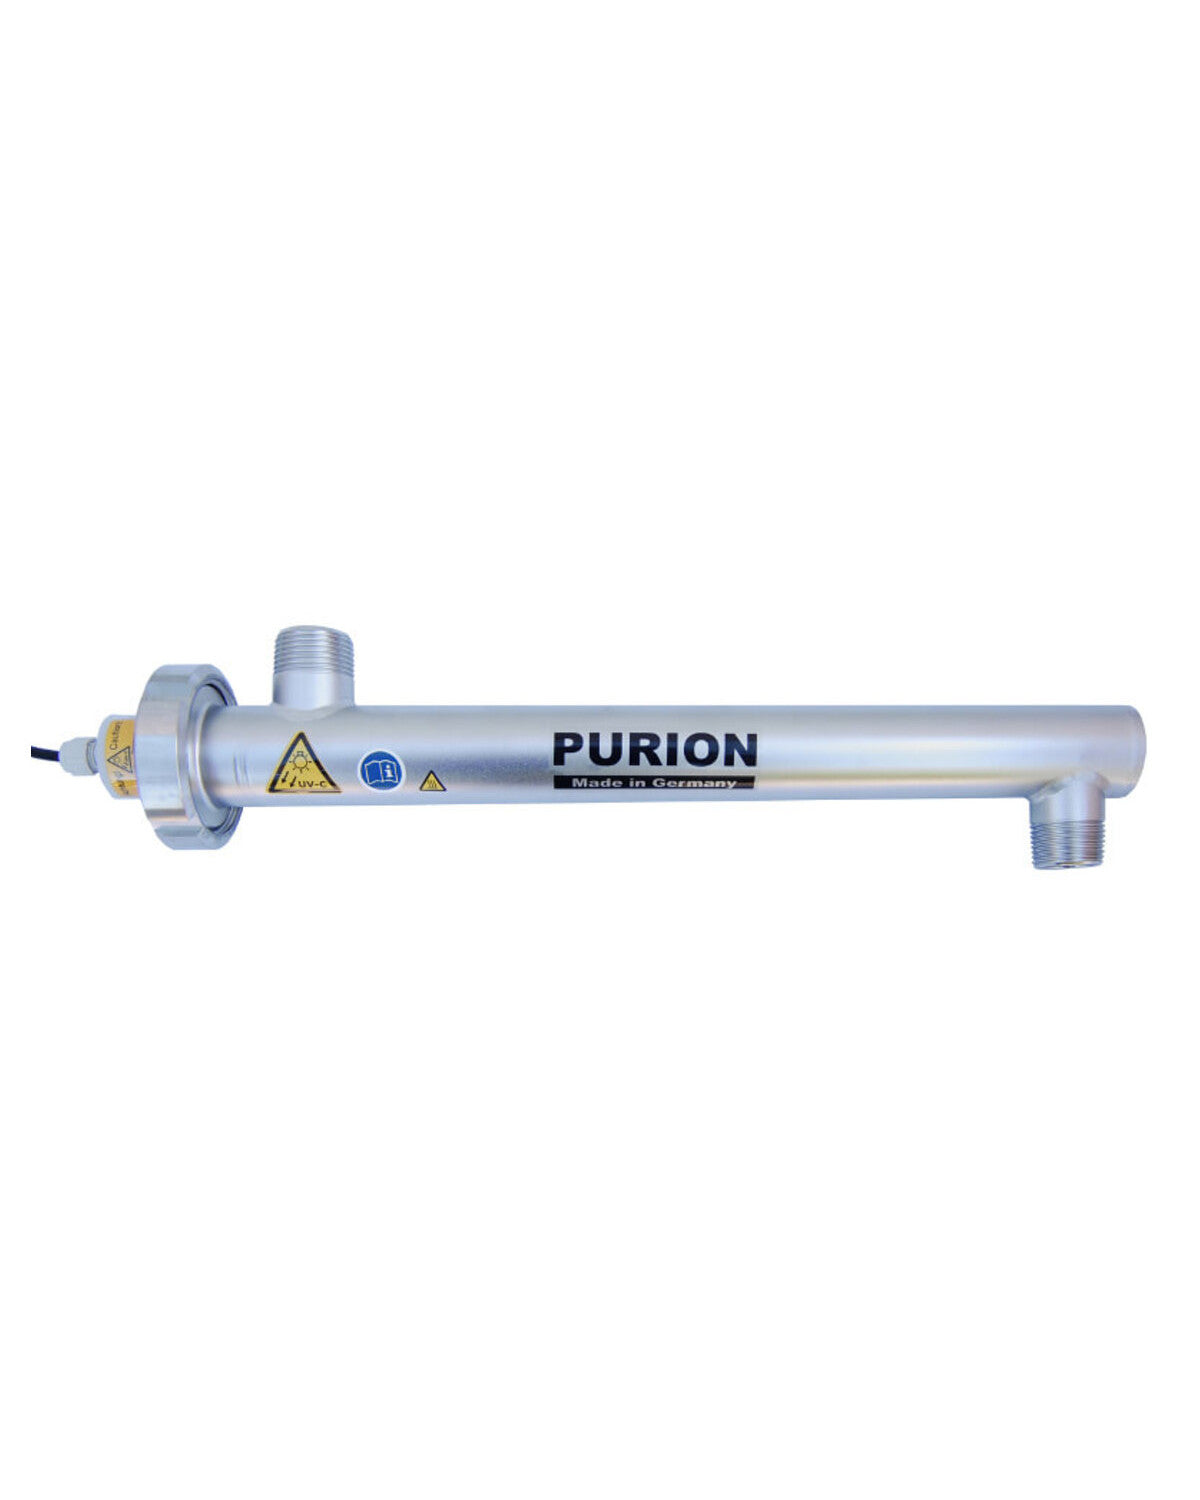 Nach den Angaben des Herstellers sollte der PURION 1000 PRO OTC Plus nach 4.000 Betriebsstunden zur Desinfektion mit UV-C-Licht ausgetauscht werden.